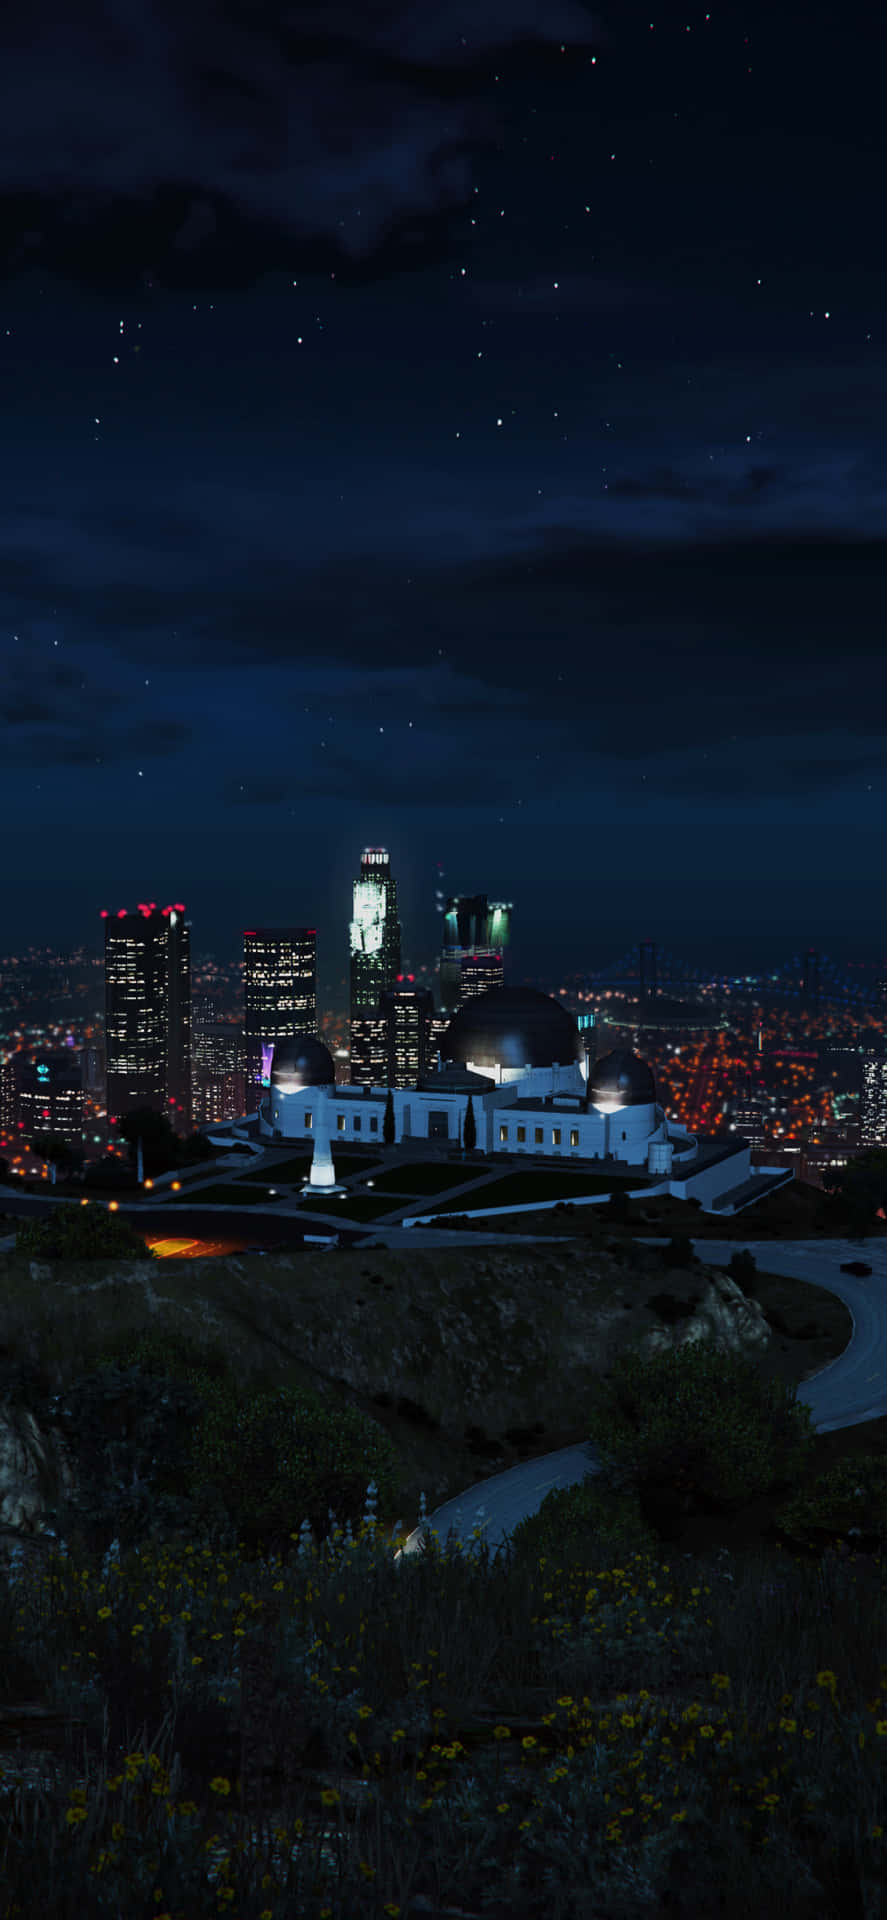 Iphonexs Max Bakgrundsbild Från Grand Theft Auto V I Los Santos Nattetid.